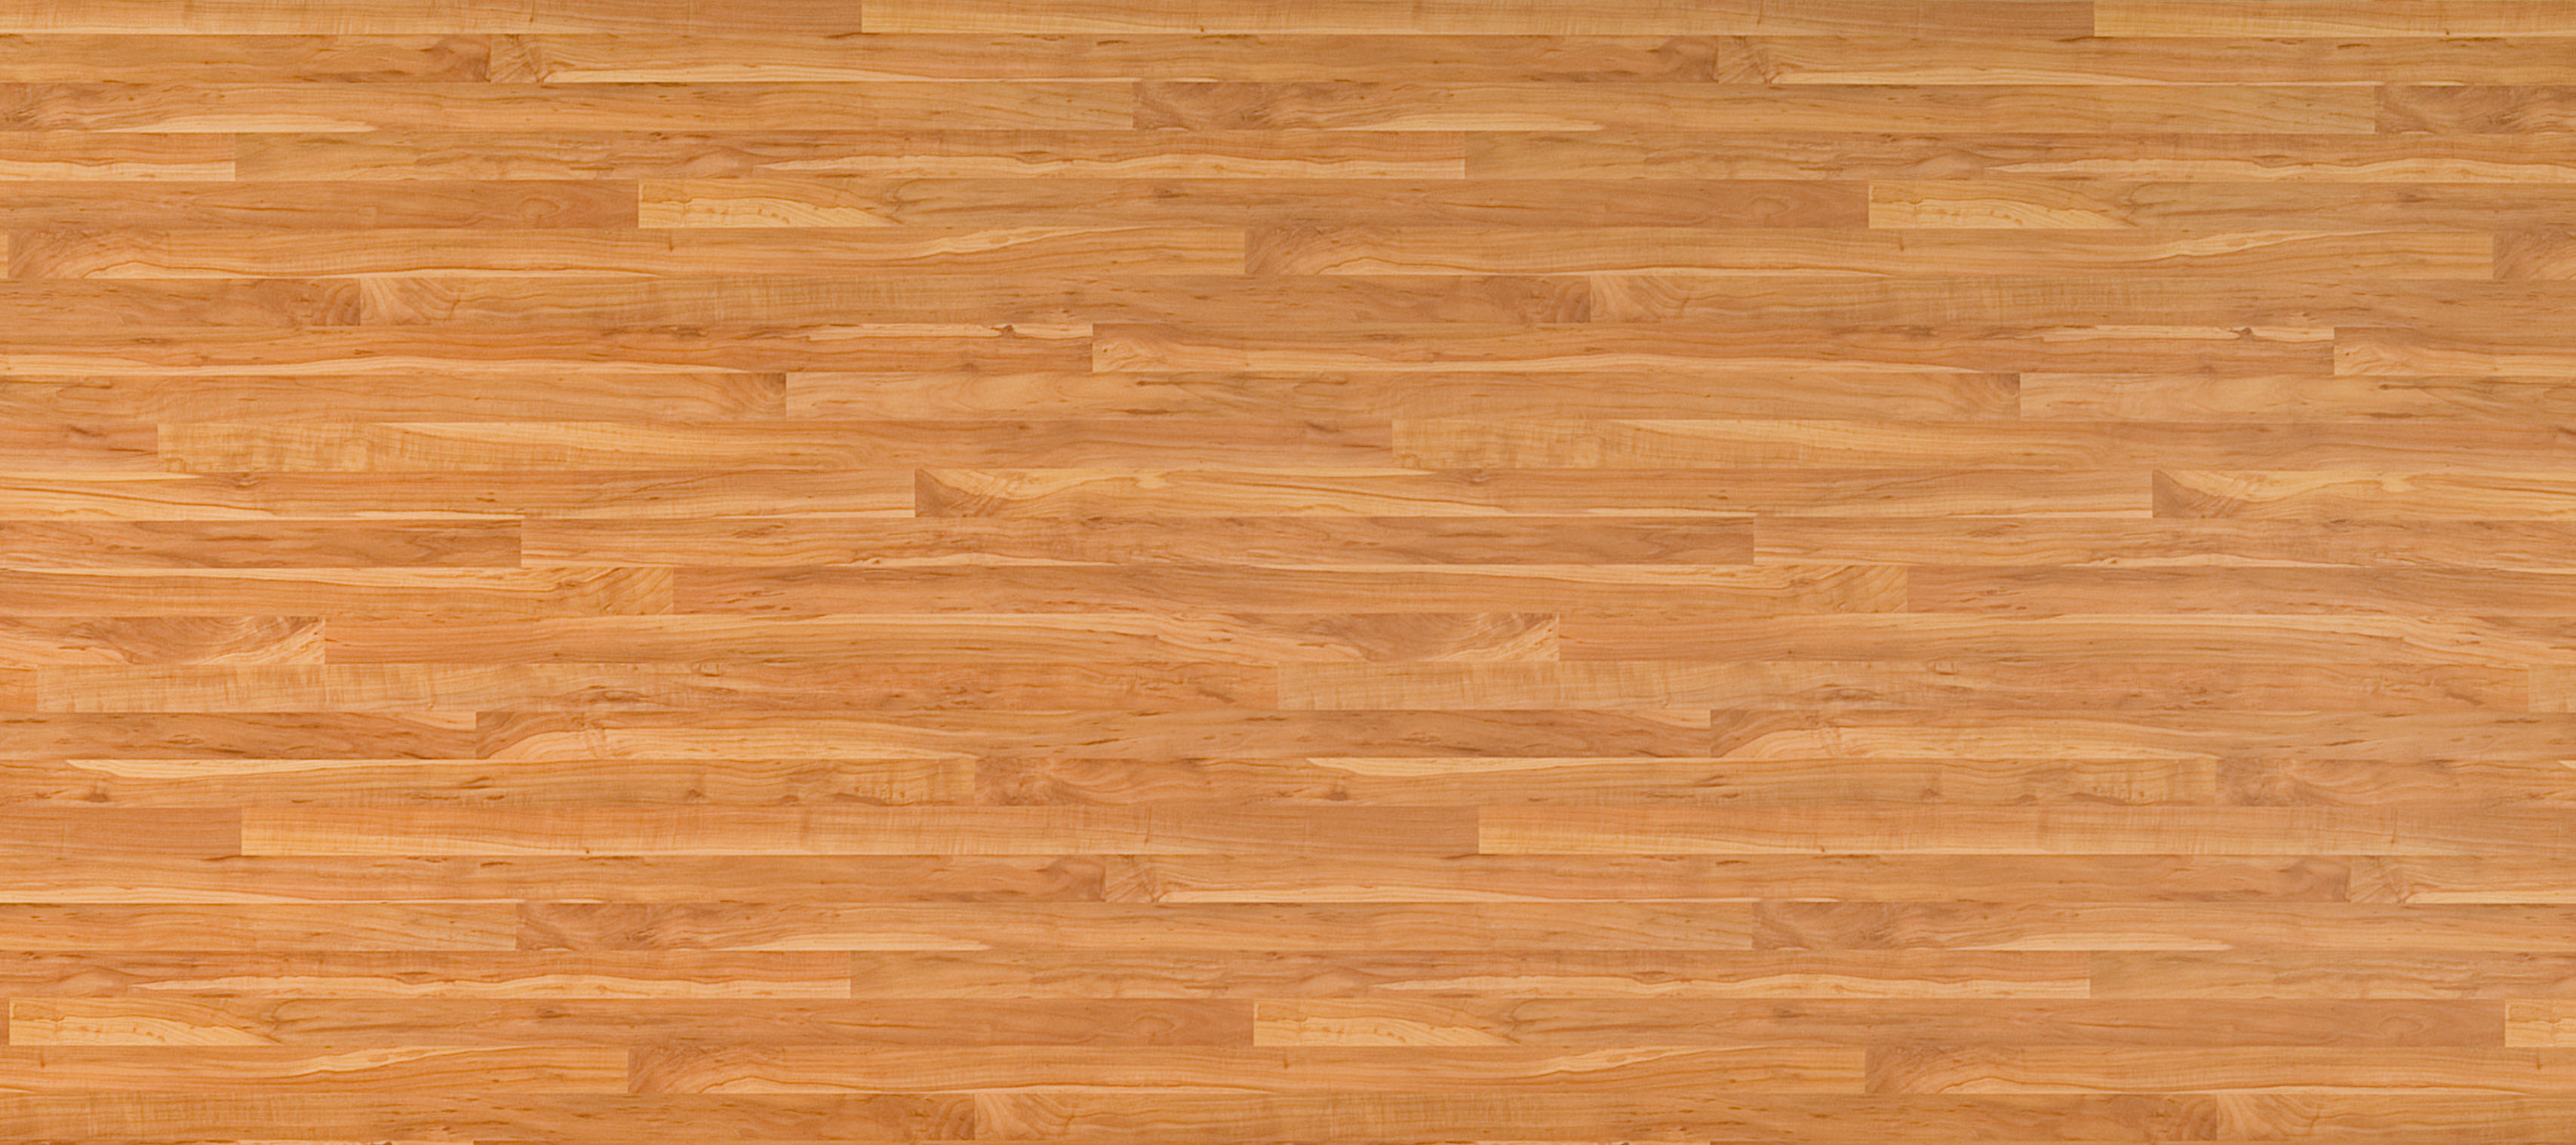 木地板优于地砖不止是外观因素